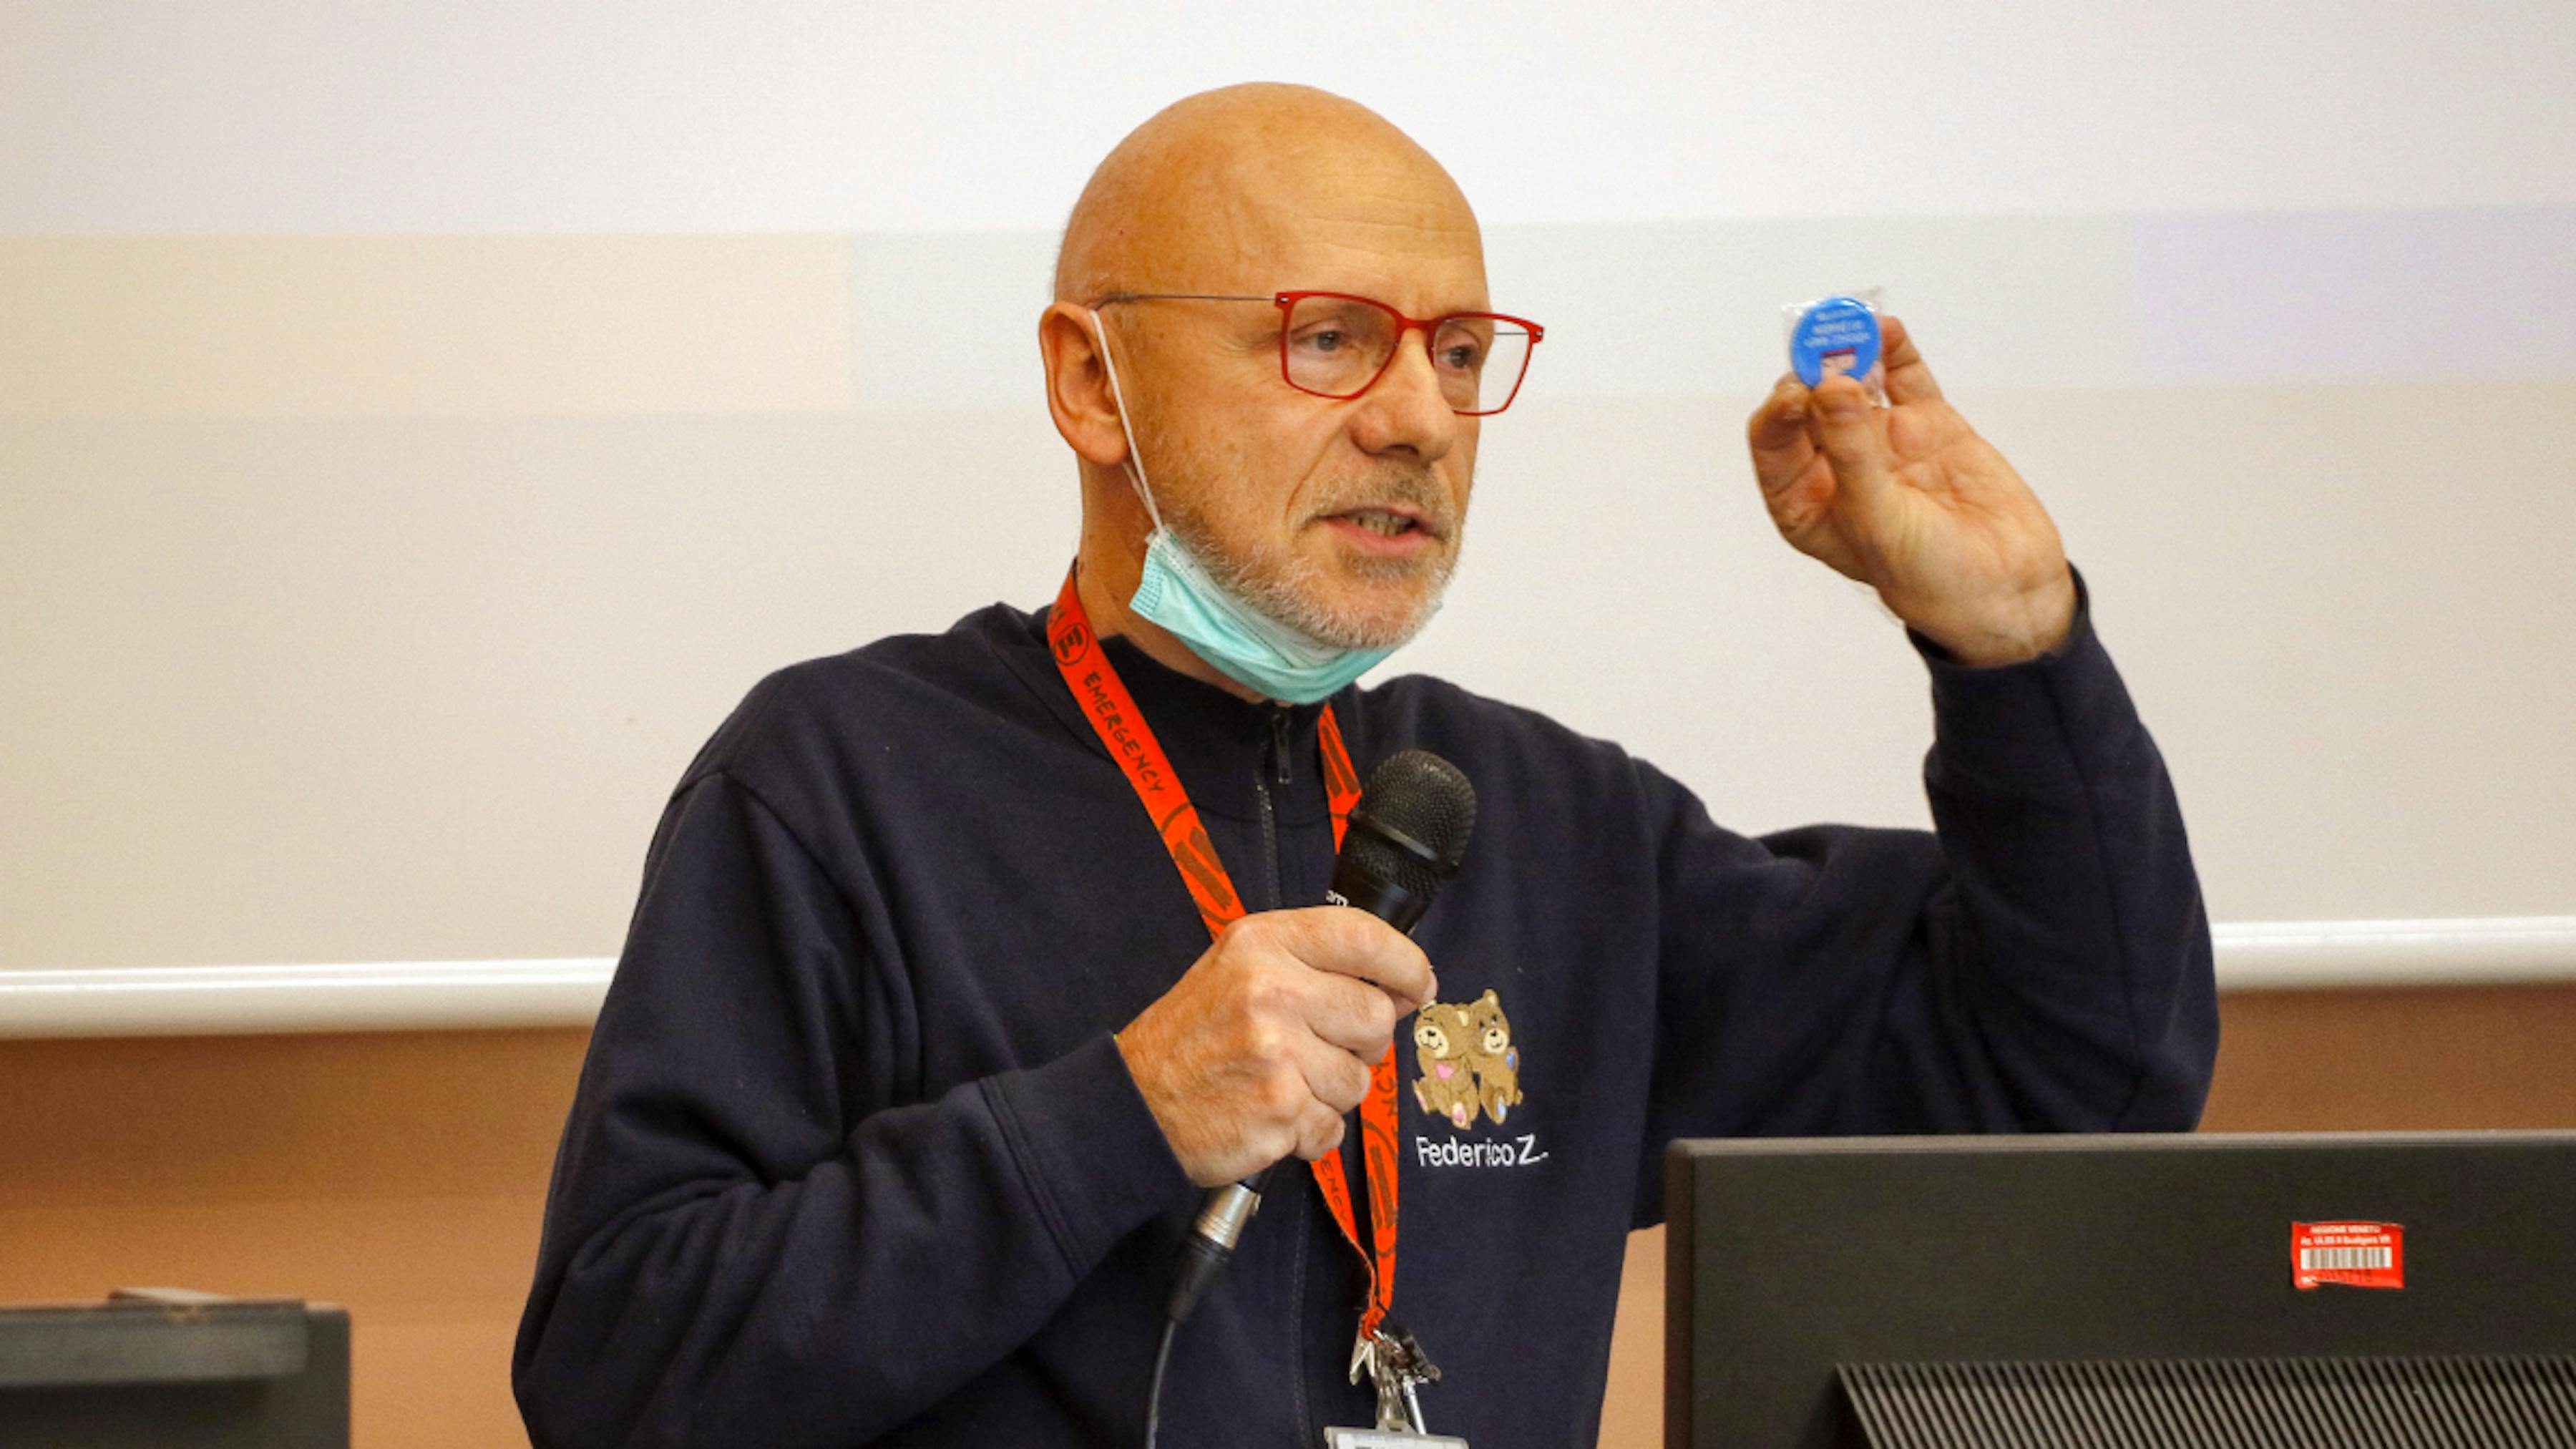 Il Dr. Federico Zaglia, Direttore di Pediatria  dell'Ospedale di Legnago